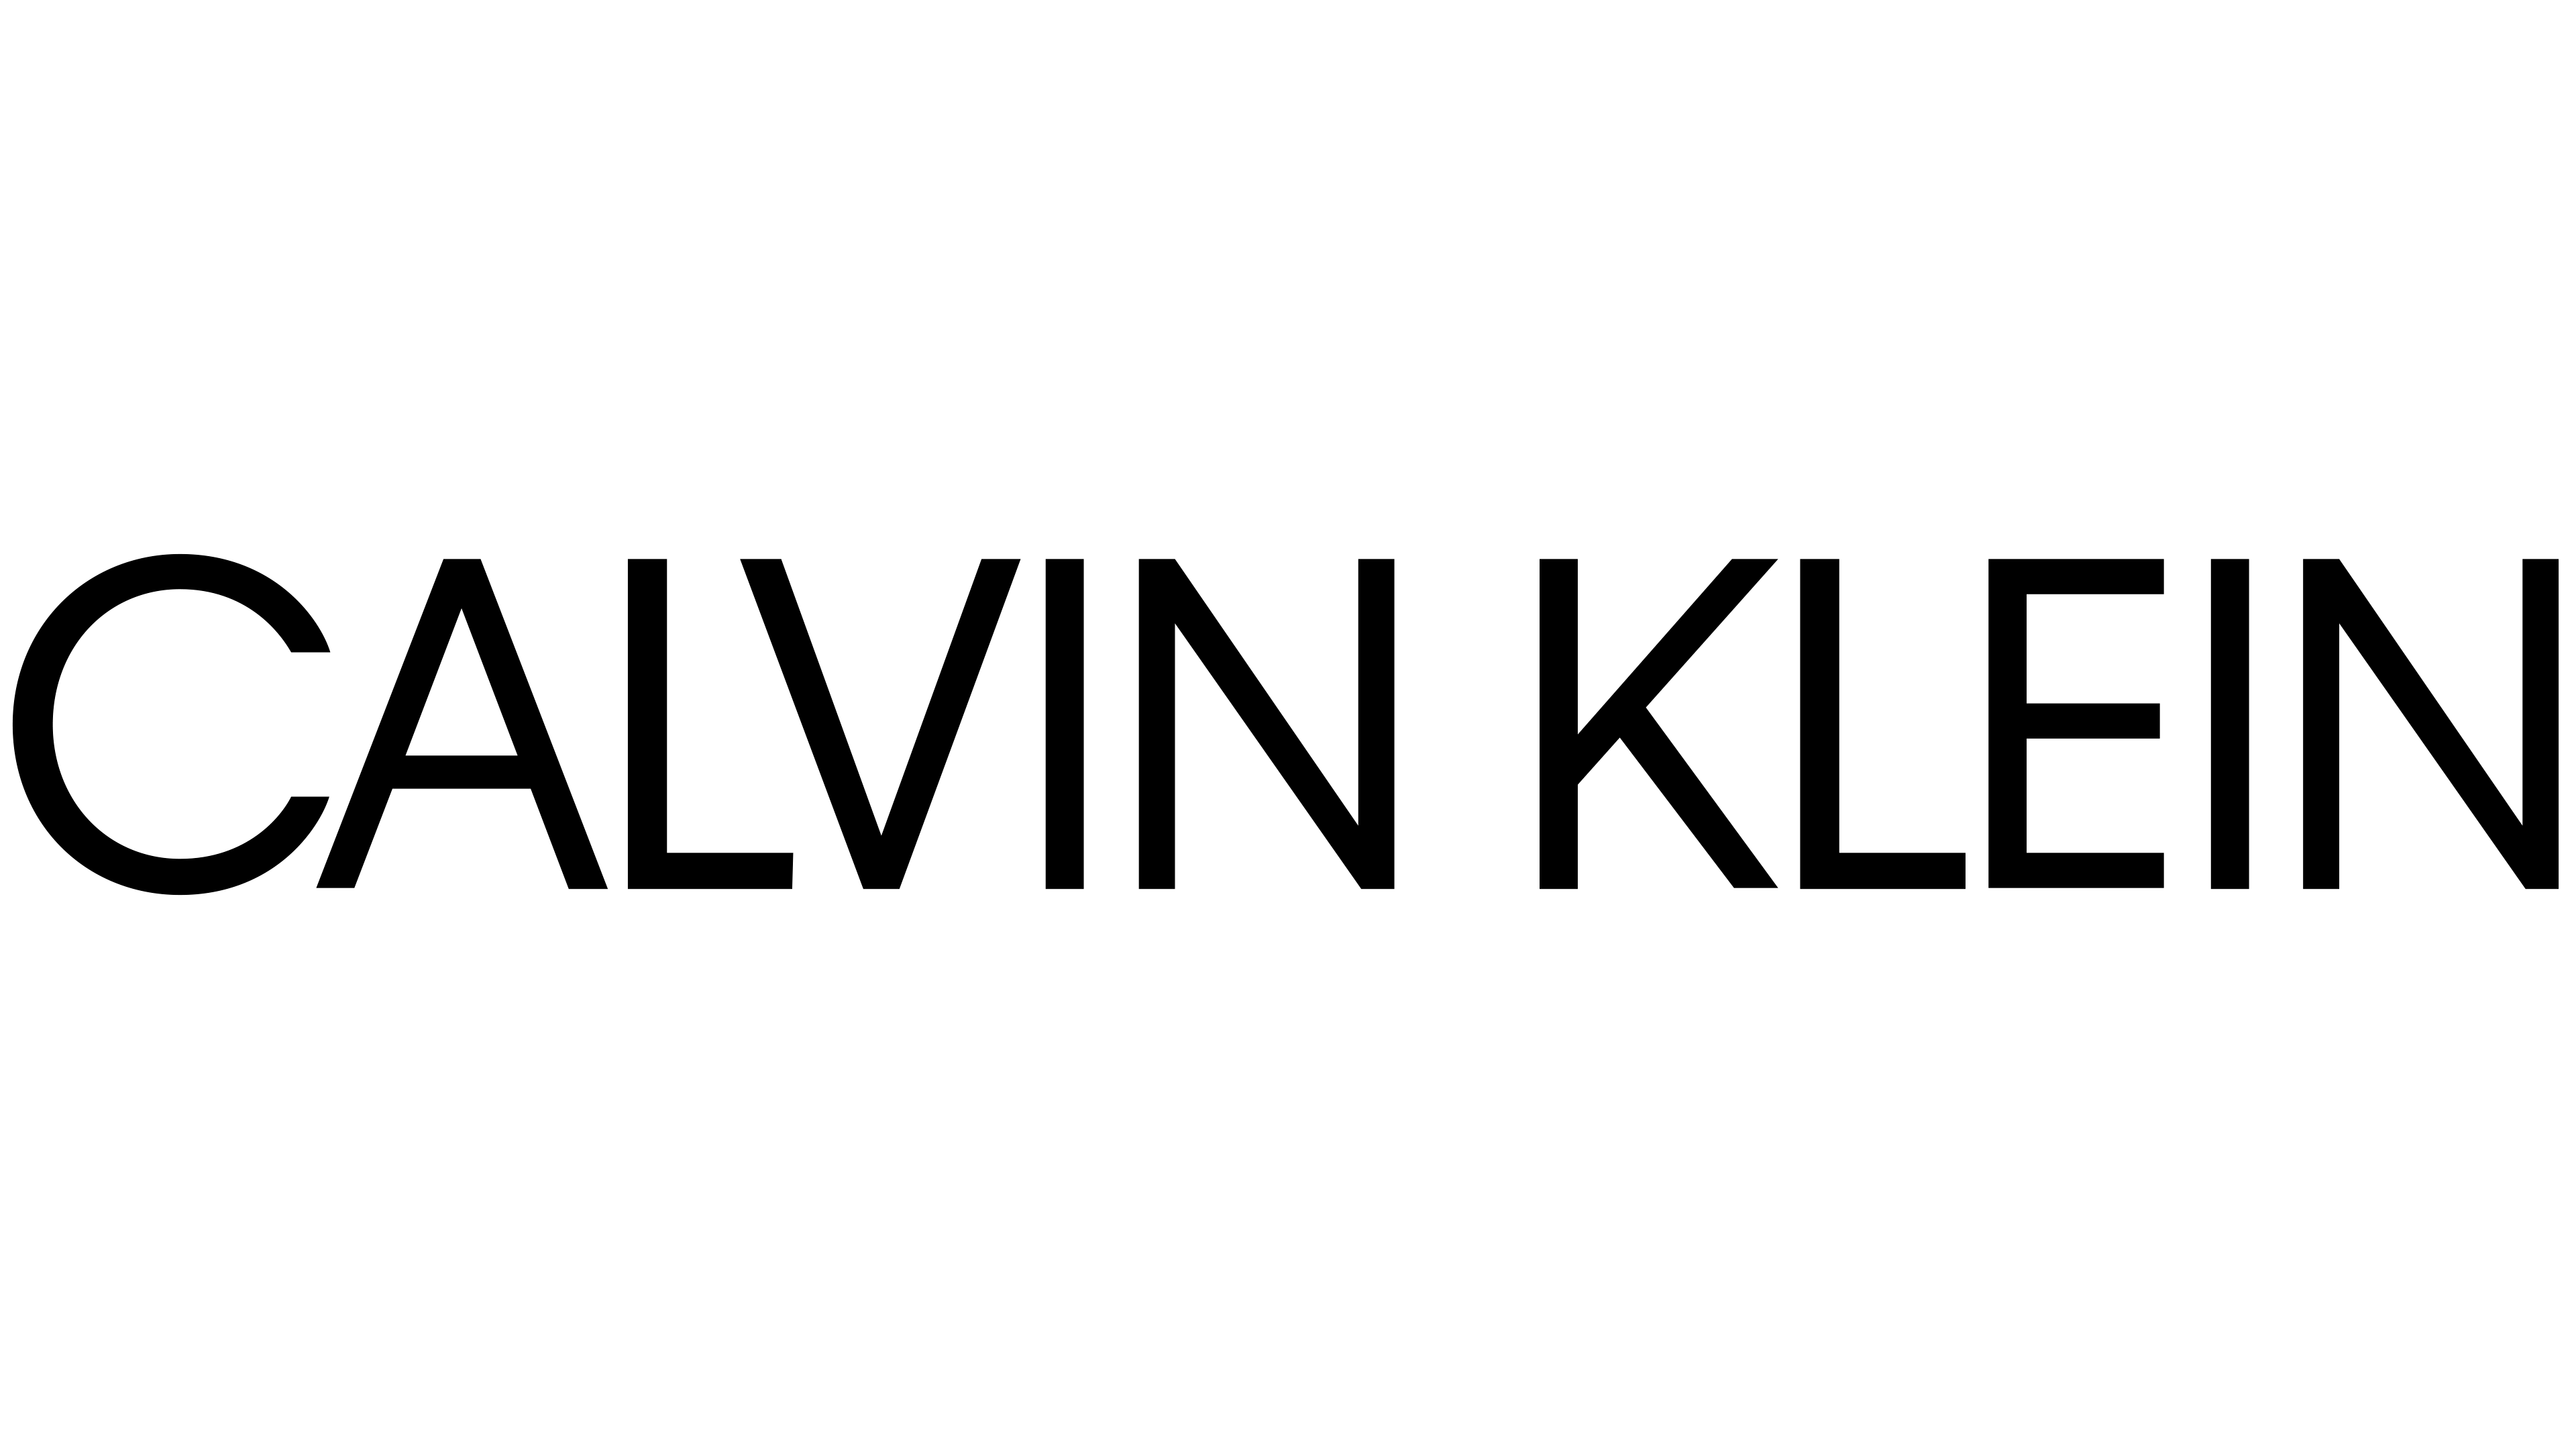 Calvin Klein Coupons & Promo Codes